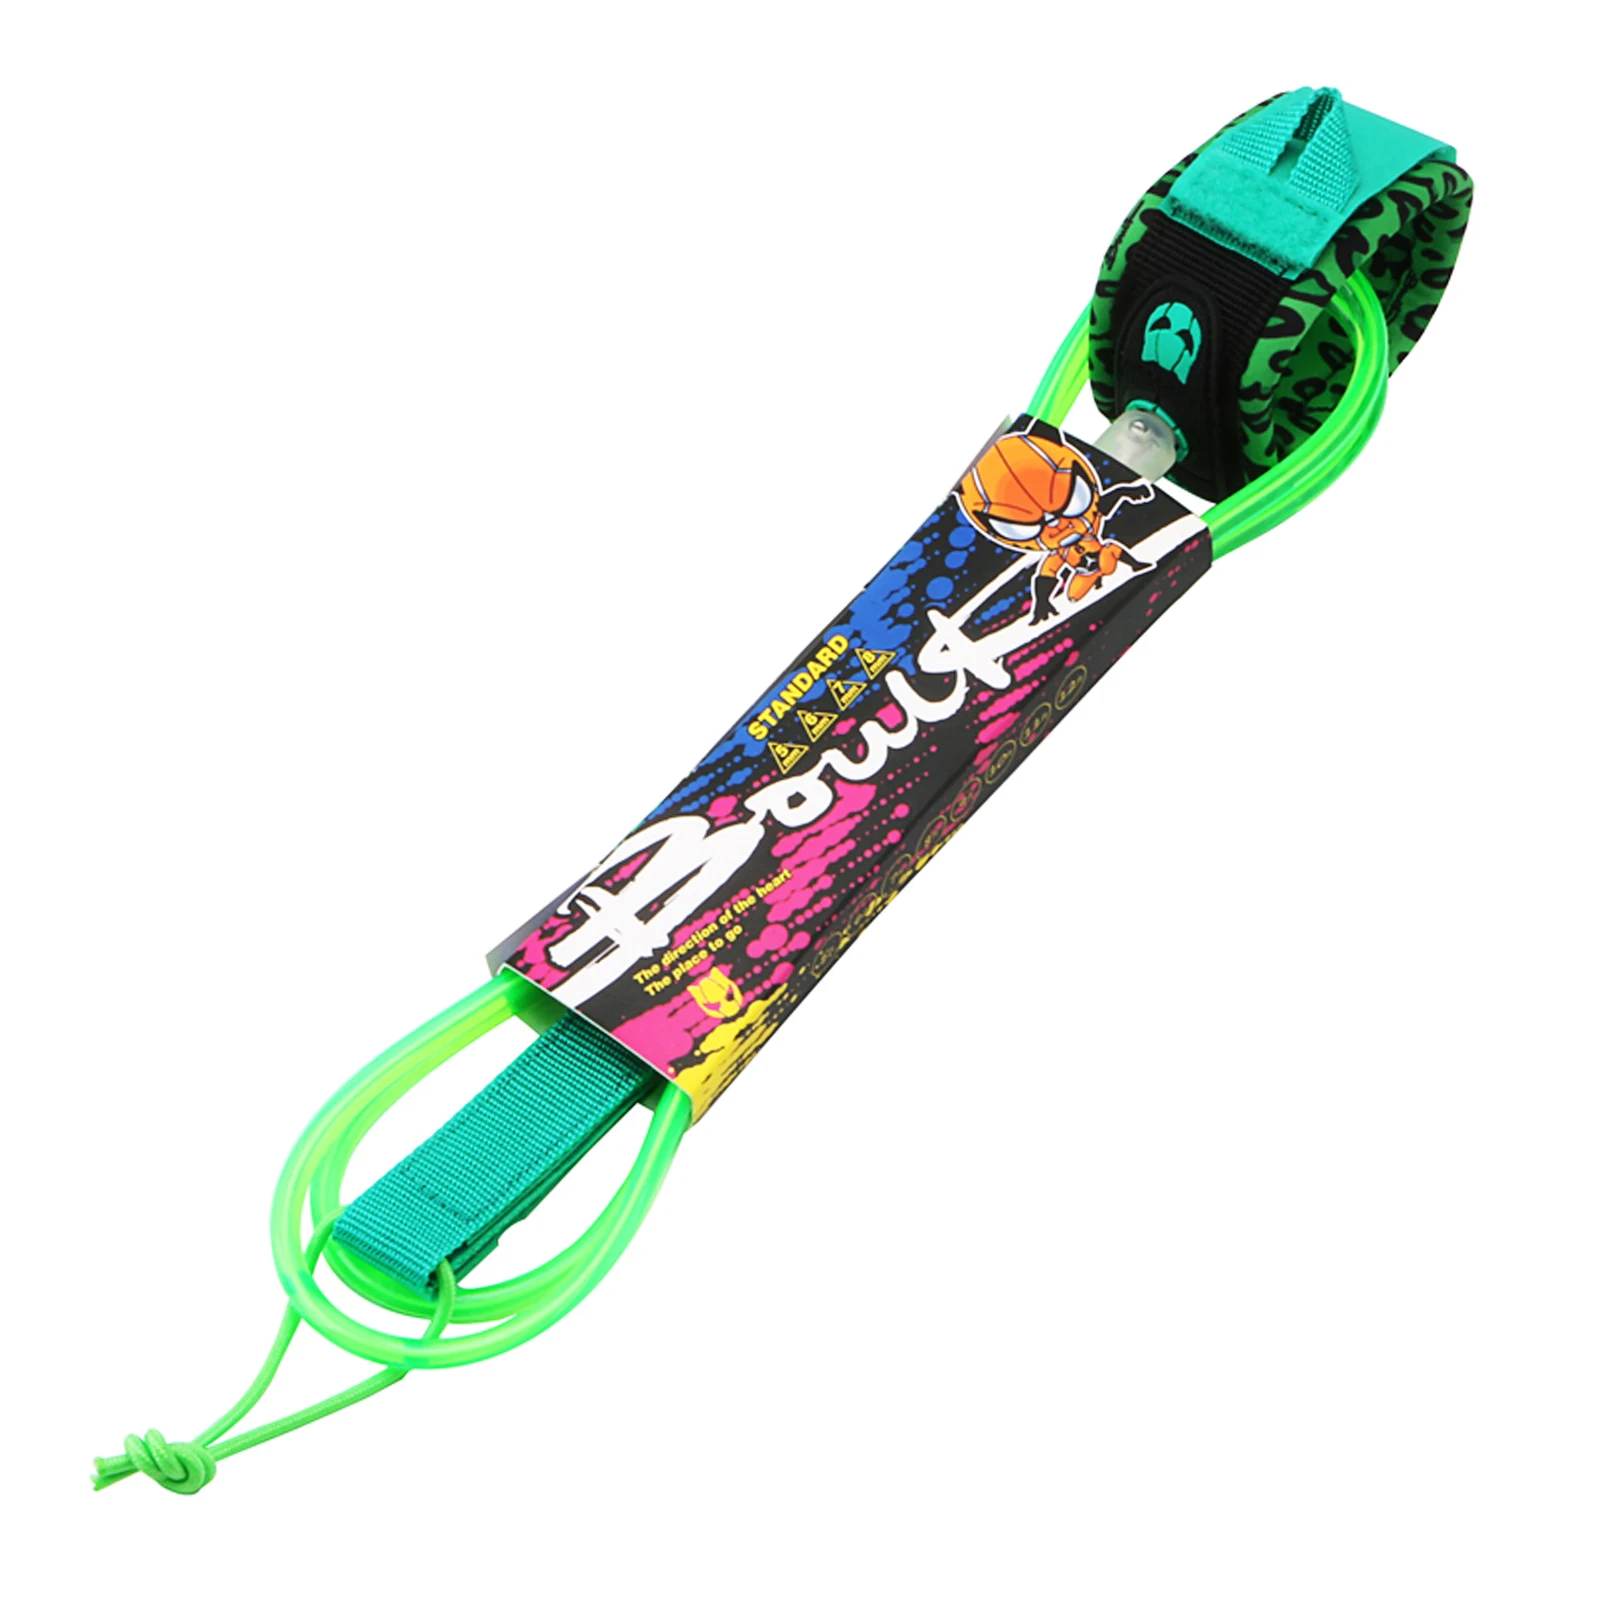 

Шнур для серфинга 6-8 футов, толстый прямой поводок из ТПУ для SUP-серфинга, длинная веревка для ног, 7 мм